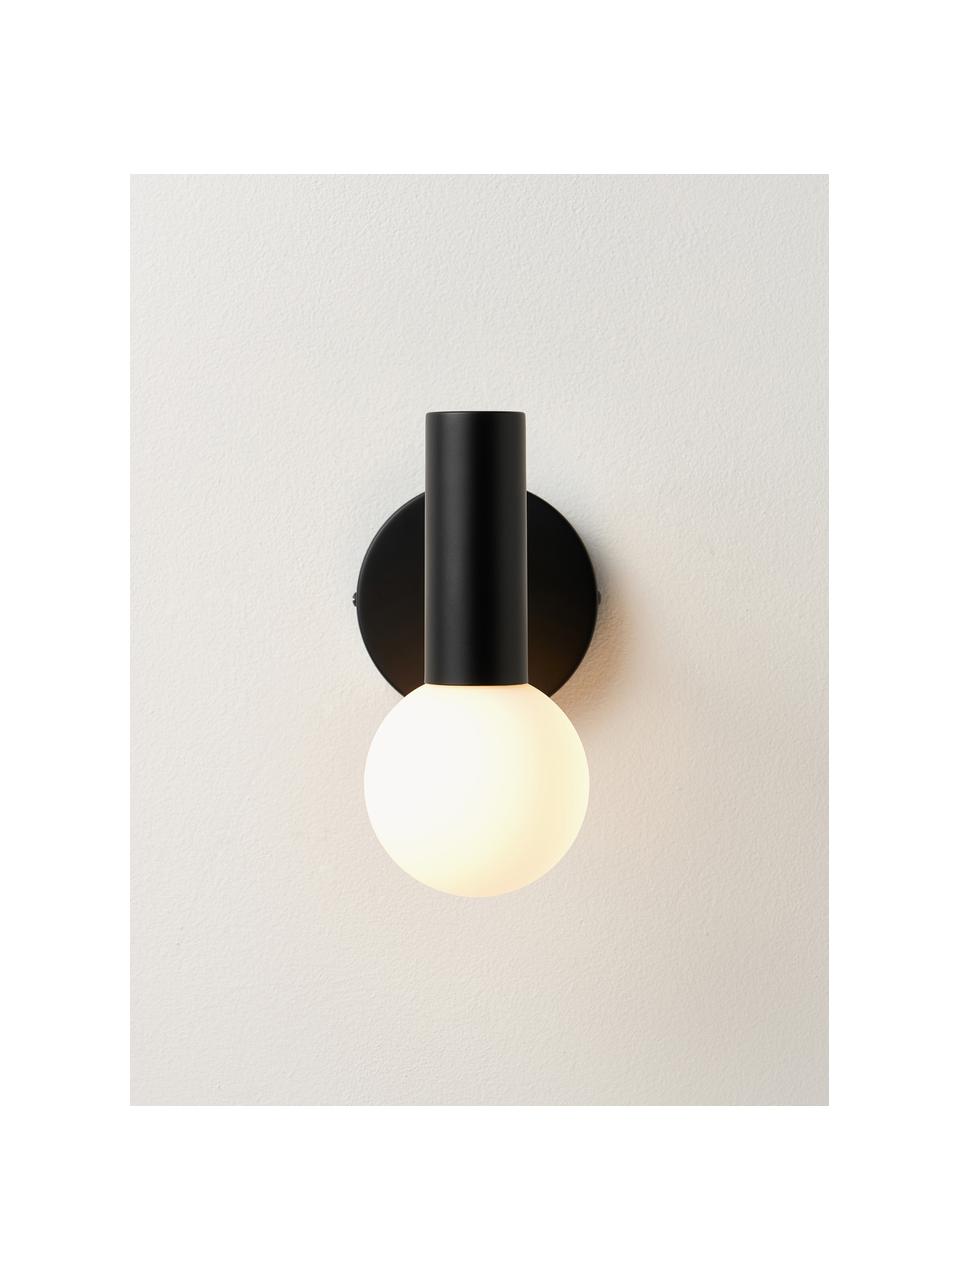 Verstelbare wandlamp Wilson met glazen lampenkap, Lampenkap: opaalglas, Fitting: gepoedercoat metaal, Wit, zwart, D 22 x H 22 cm